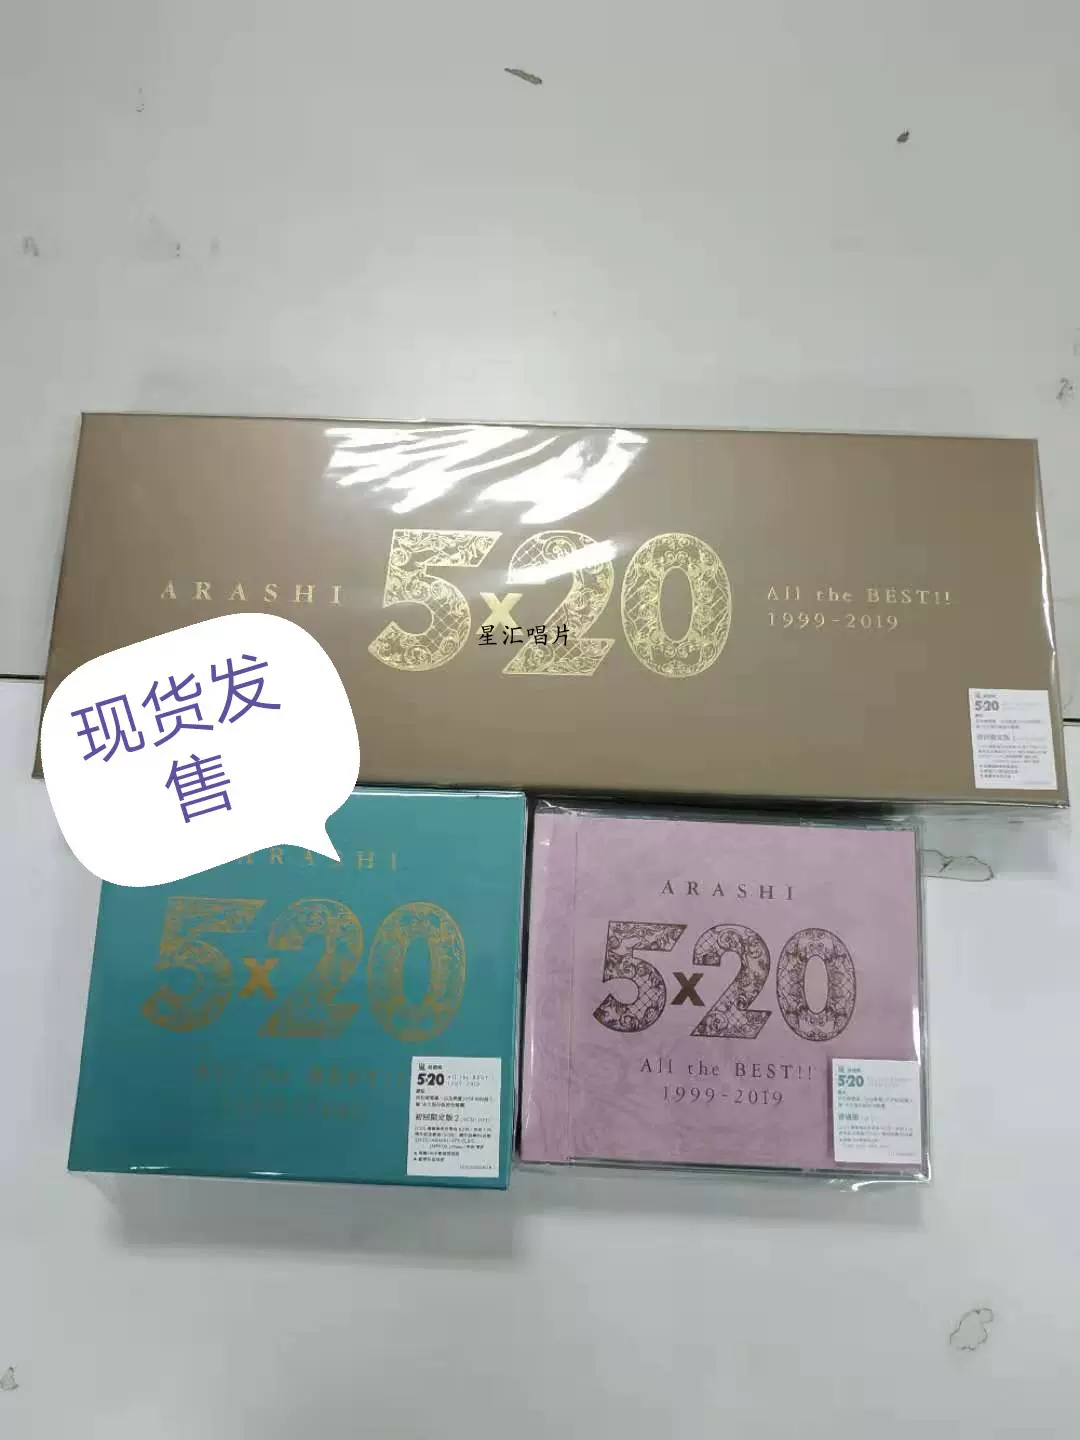 现货岚ARASHI 5x20 All the BEST1999-2019 初回限定盘1 4CD+DVD-Taobao